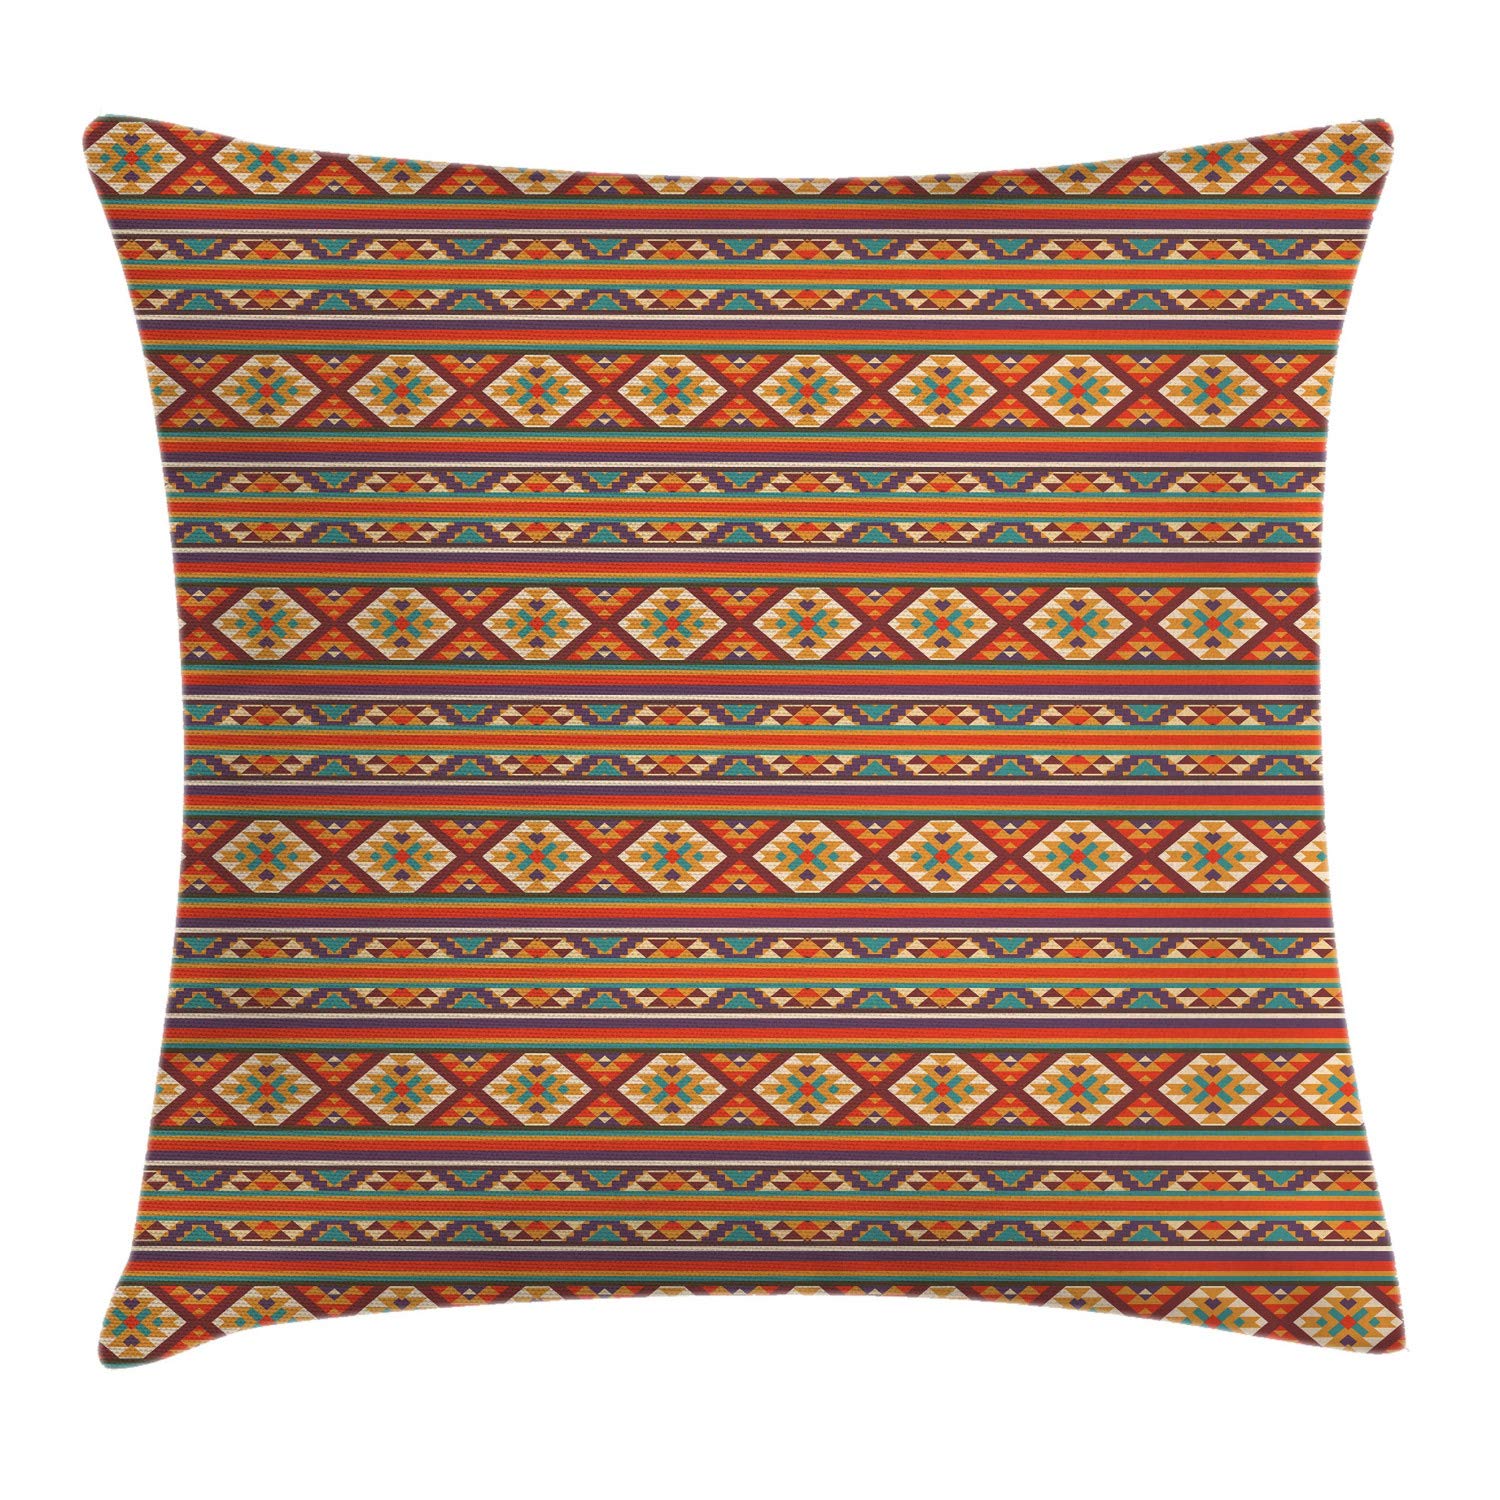 Abakuhausus De_2 Cushion Cover Multicoloured, 40 Cm X 40 Cm